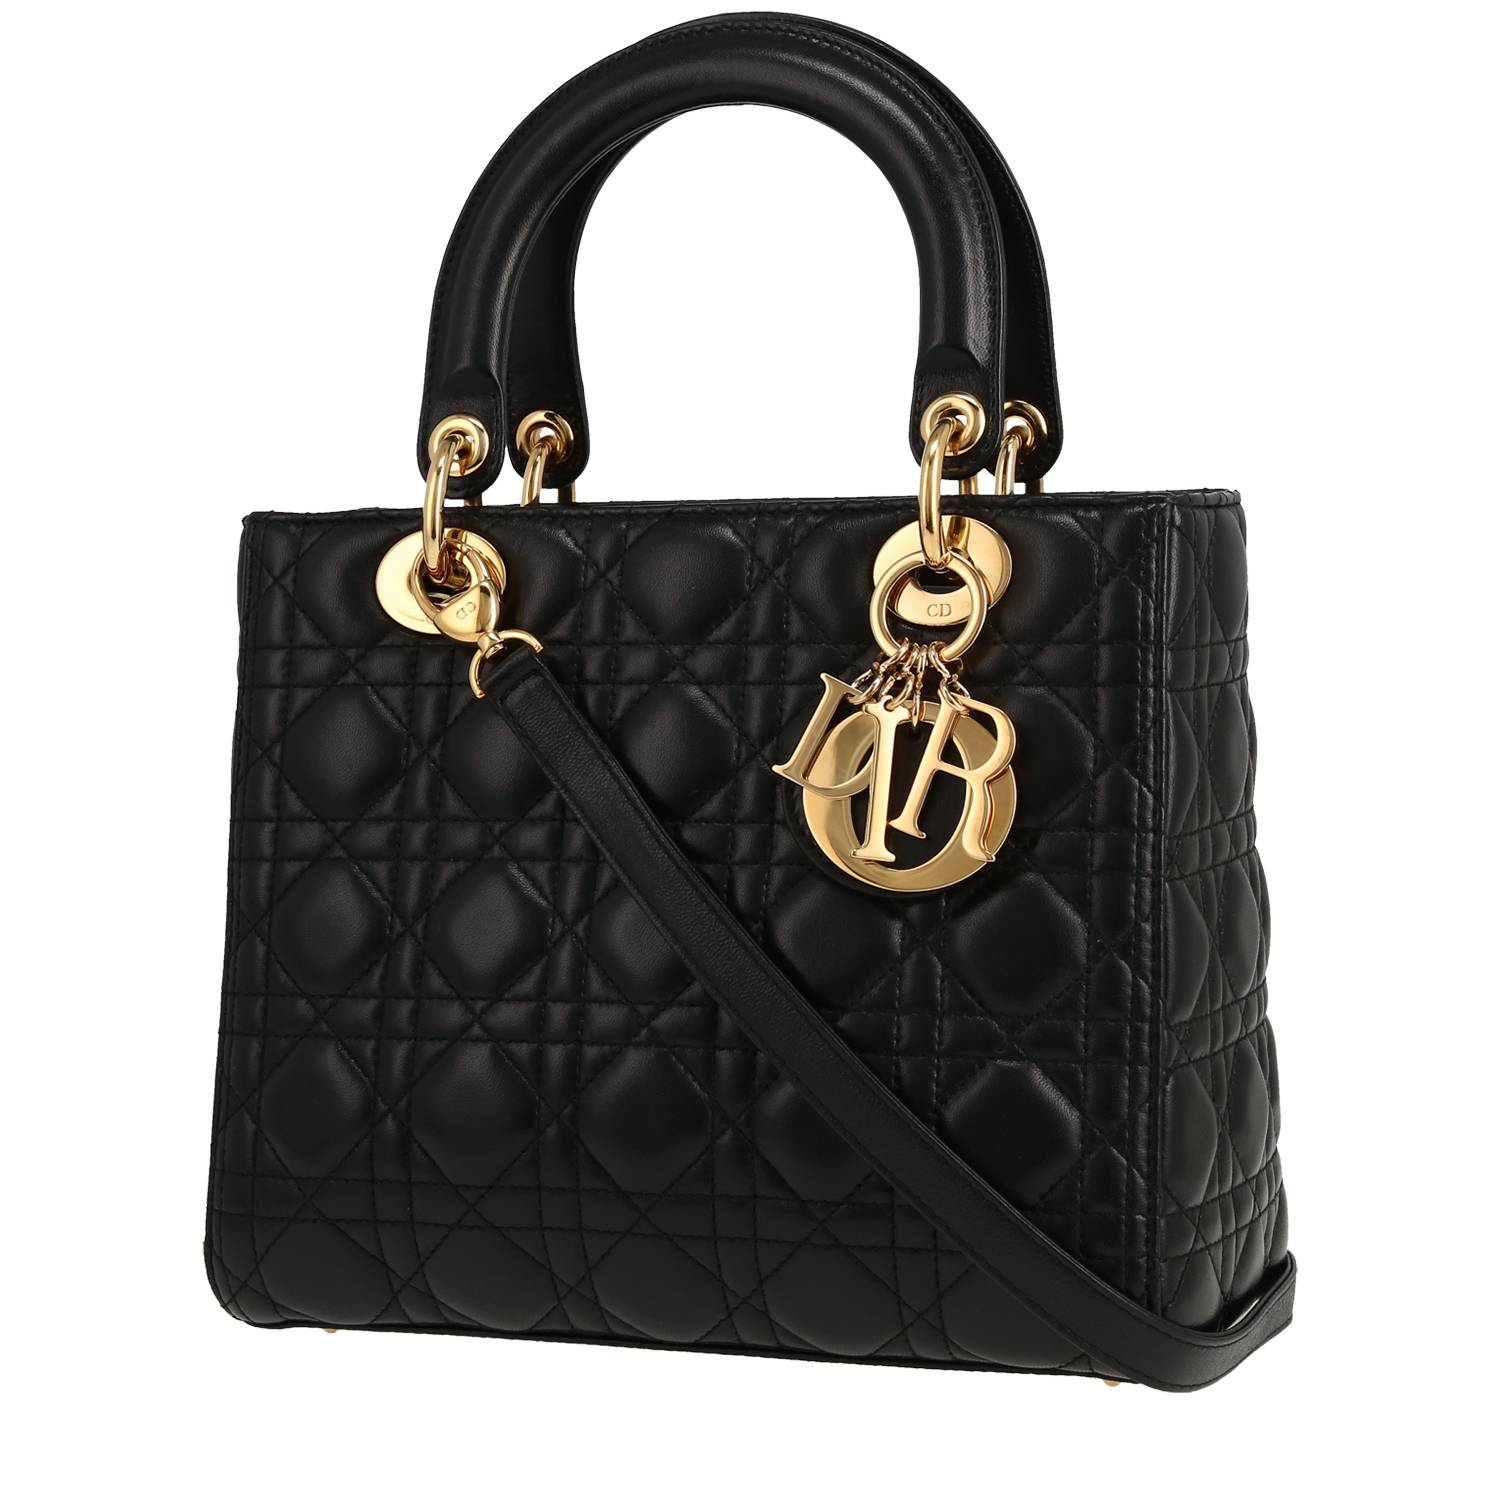 Lady Dior Handbag In Black Leather Cannage